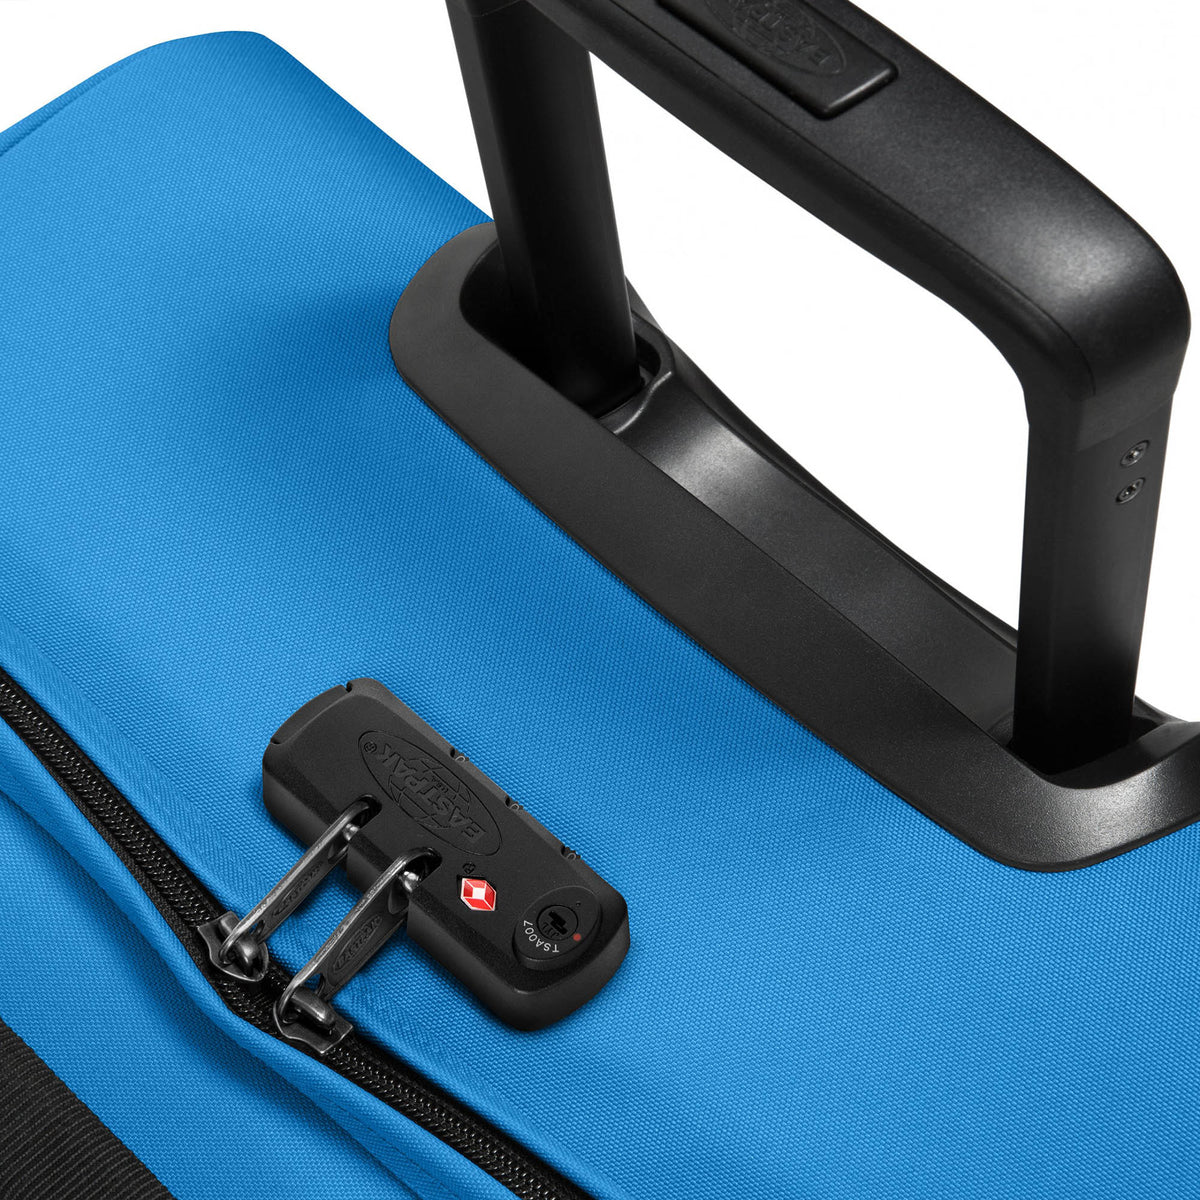 Eastpak Tranverz L Suitcase - Vibrant Blue